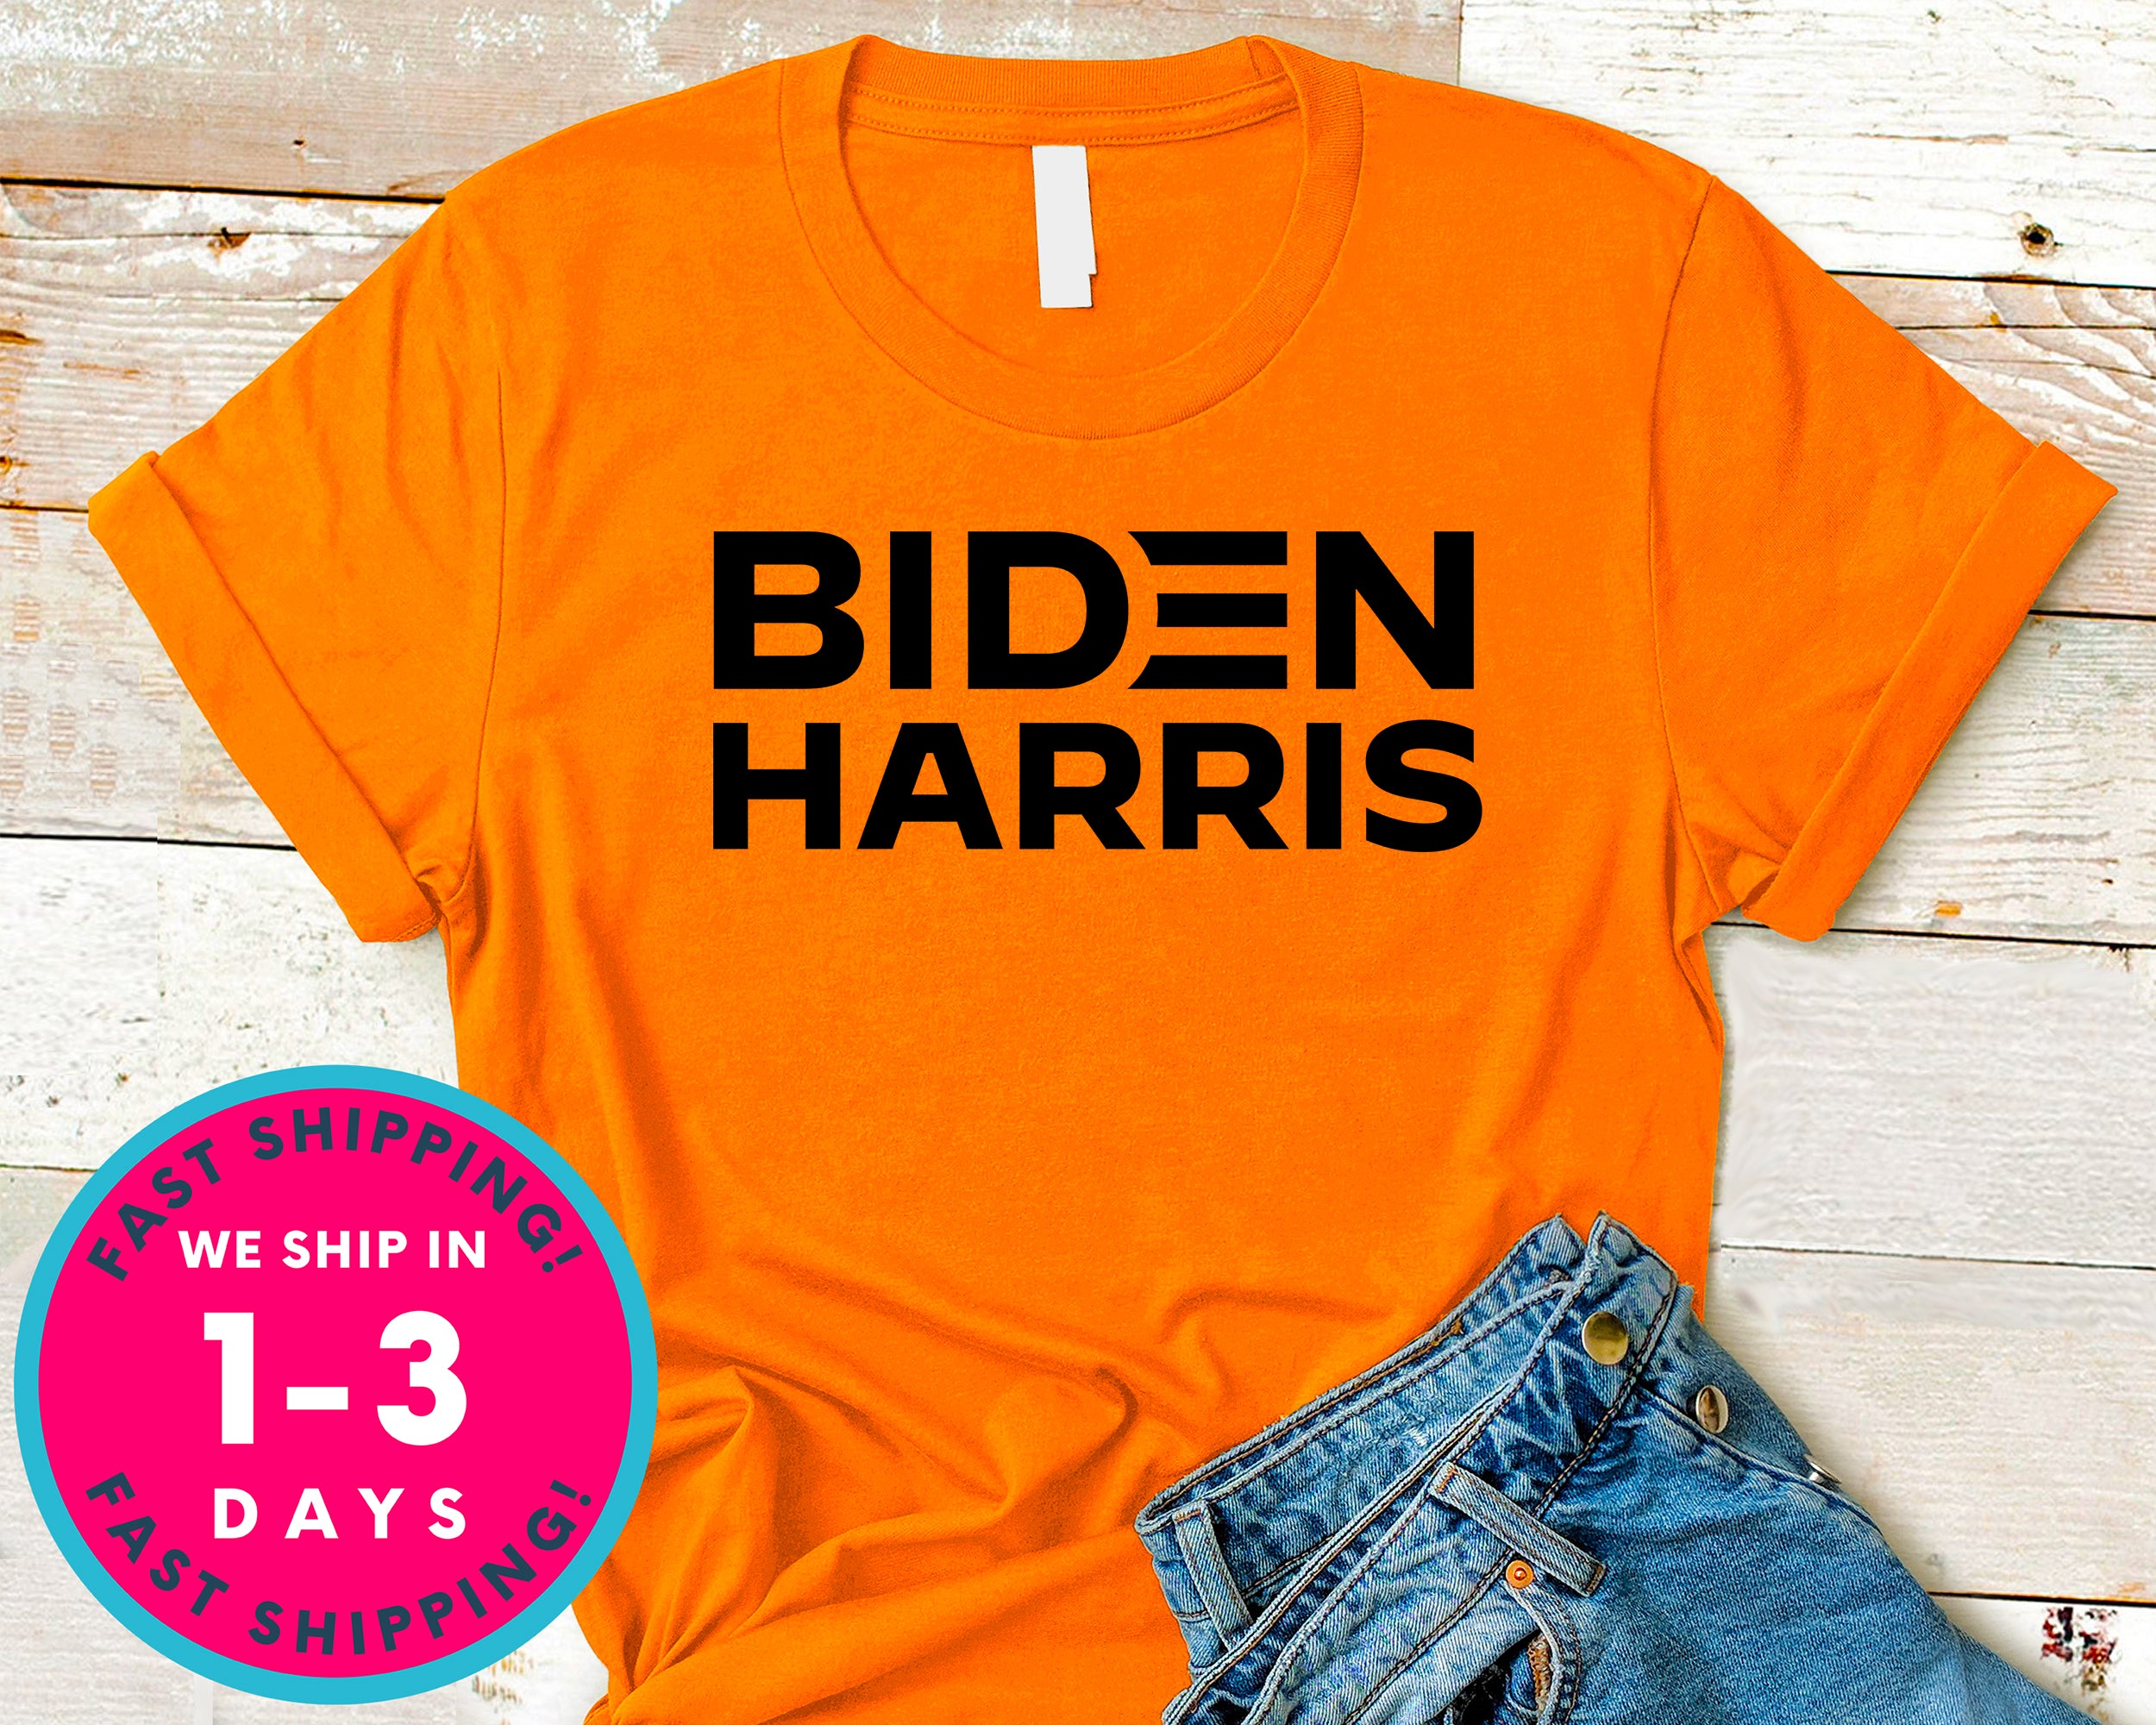 Biden Harris T-Shirt - Political Activist Shirt